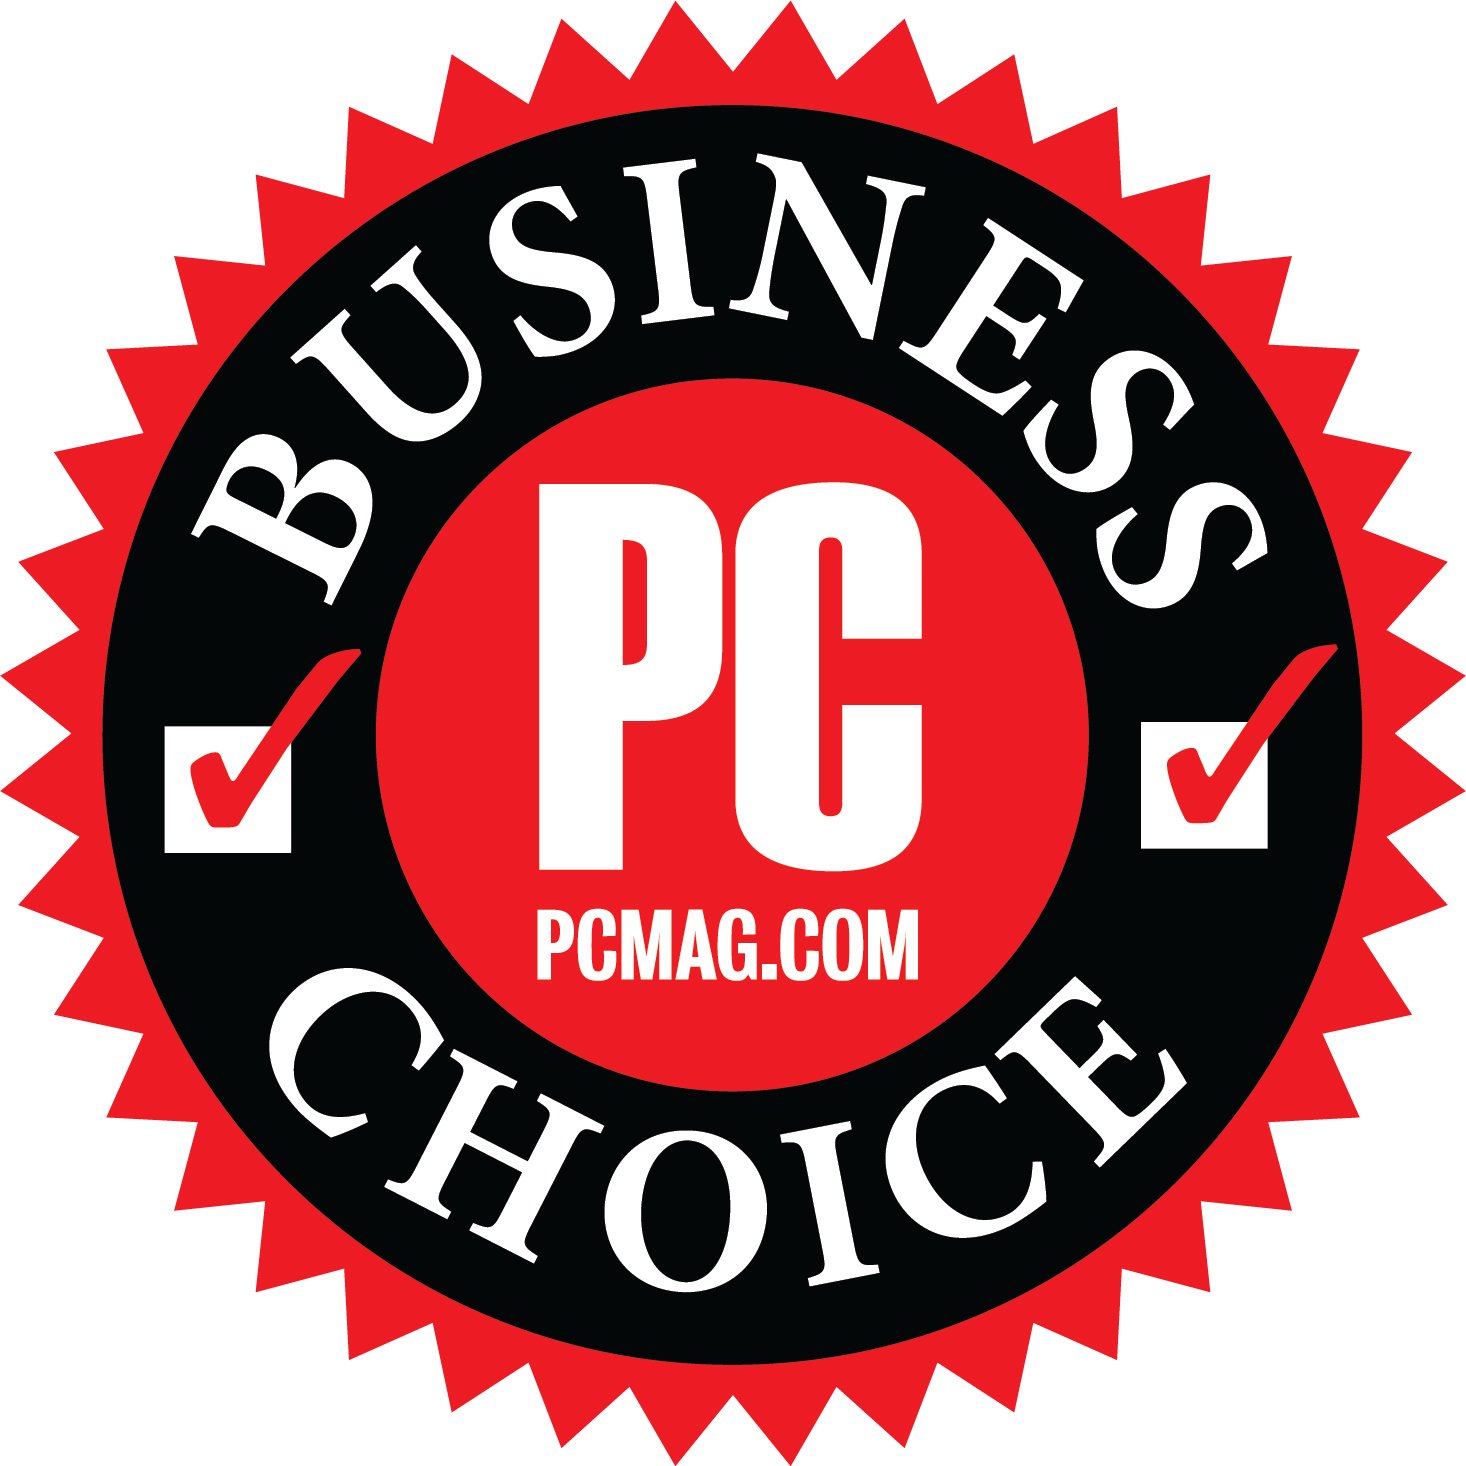  PC PCMAG.COM BUSINESS CHOICE